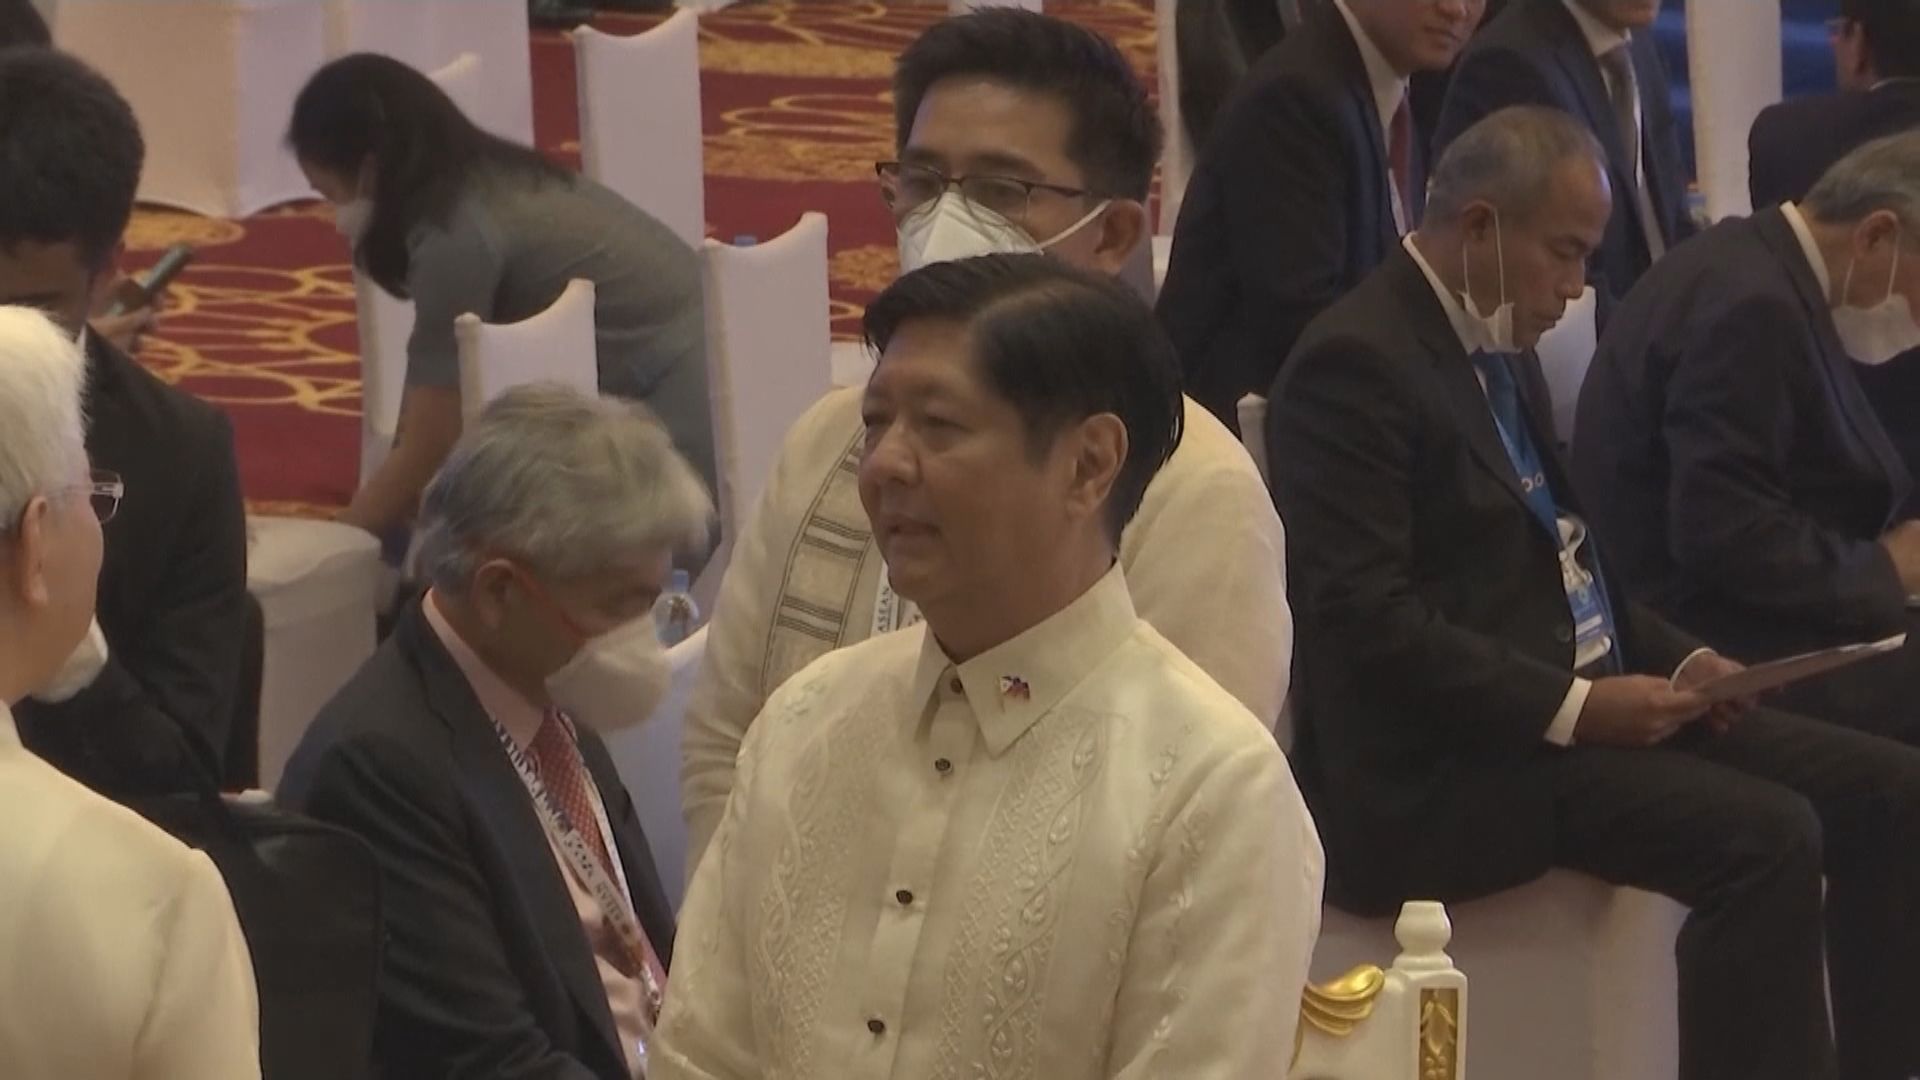 菲律賓總統小馬可斯明年初國事訪問中國或商南海議題